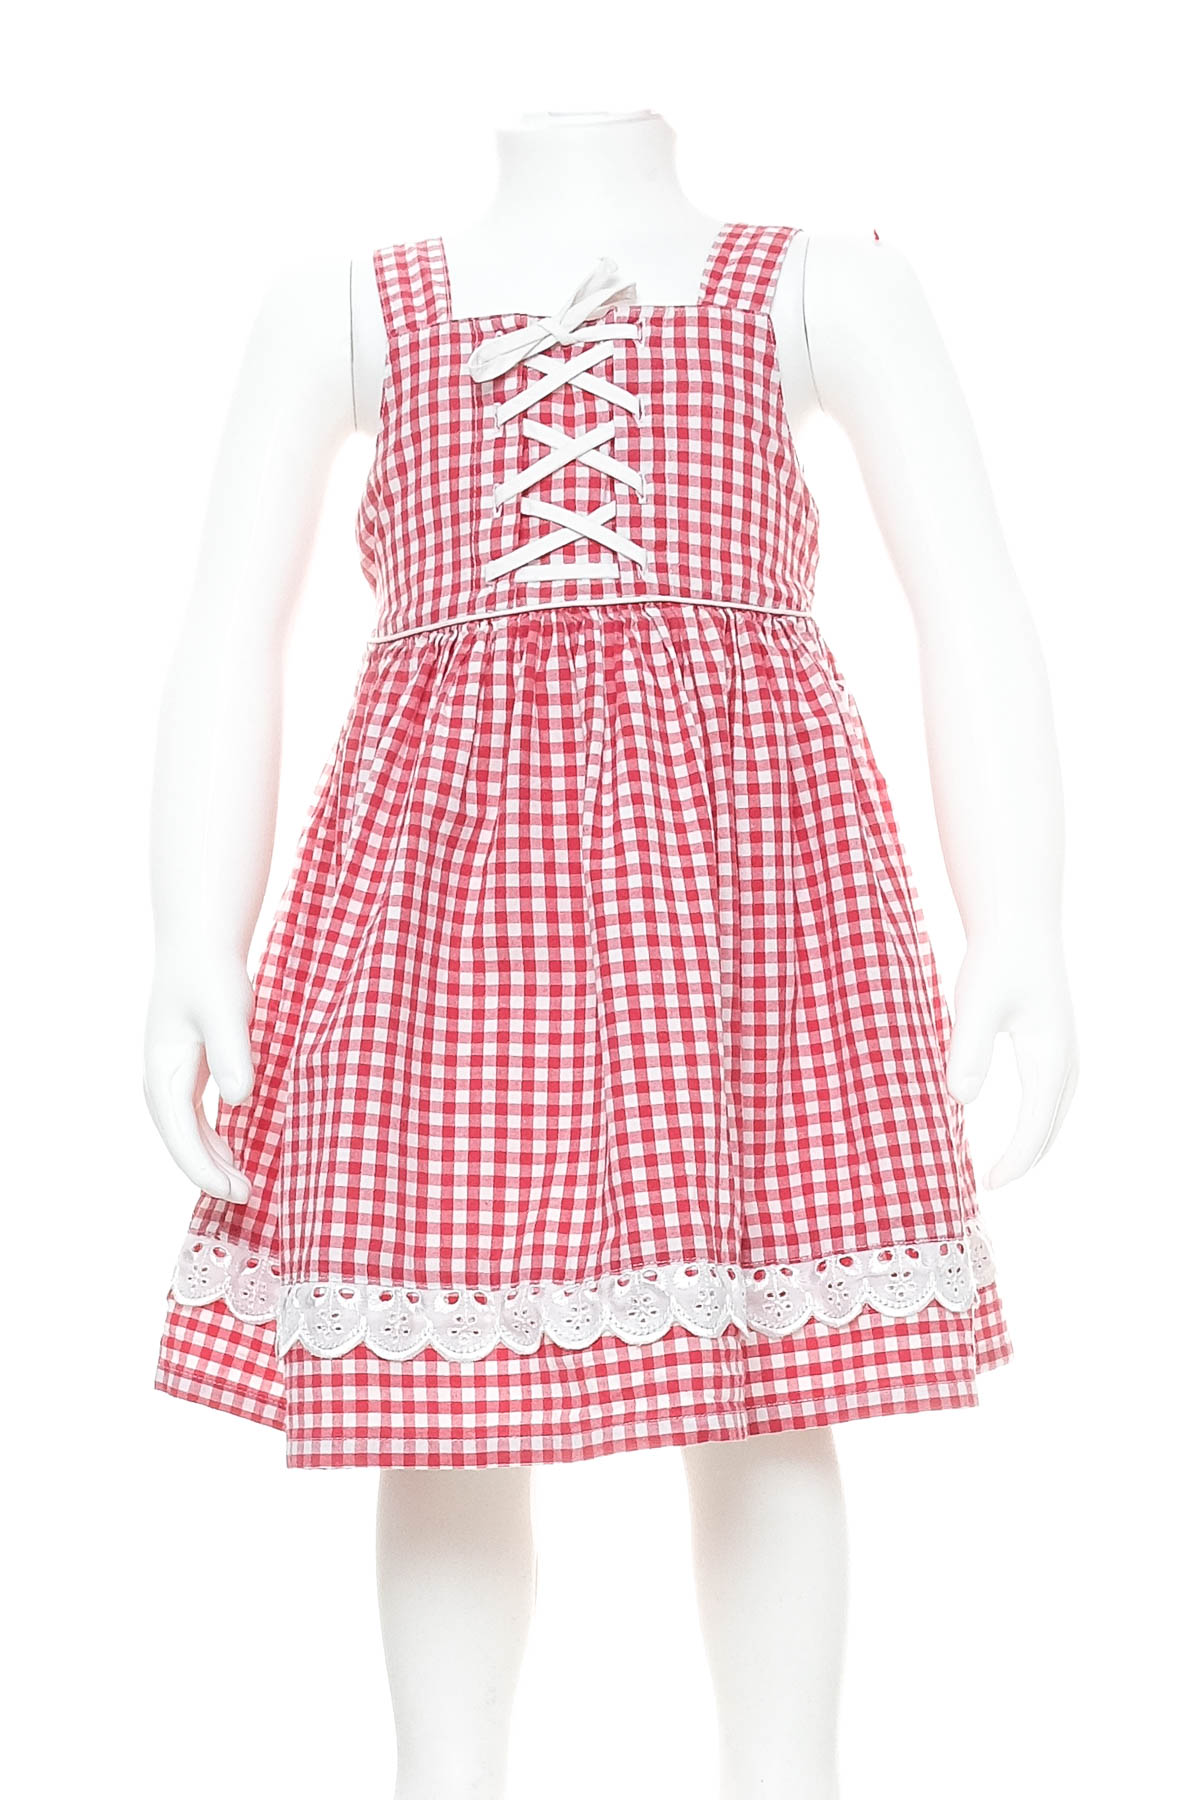 Παιδικό φόρεμα - Smily - 0